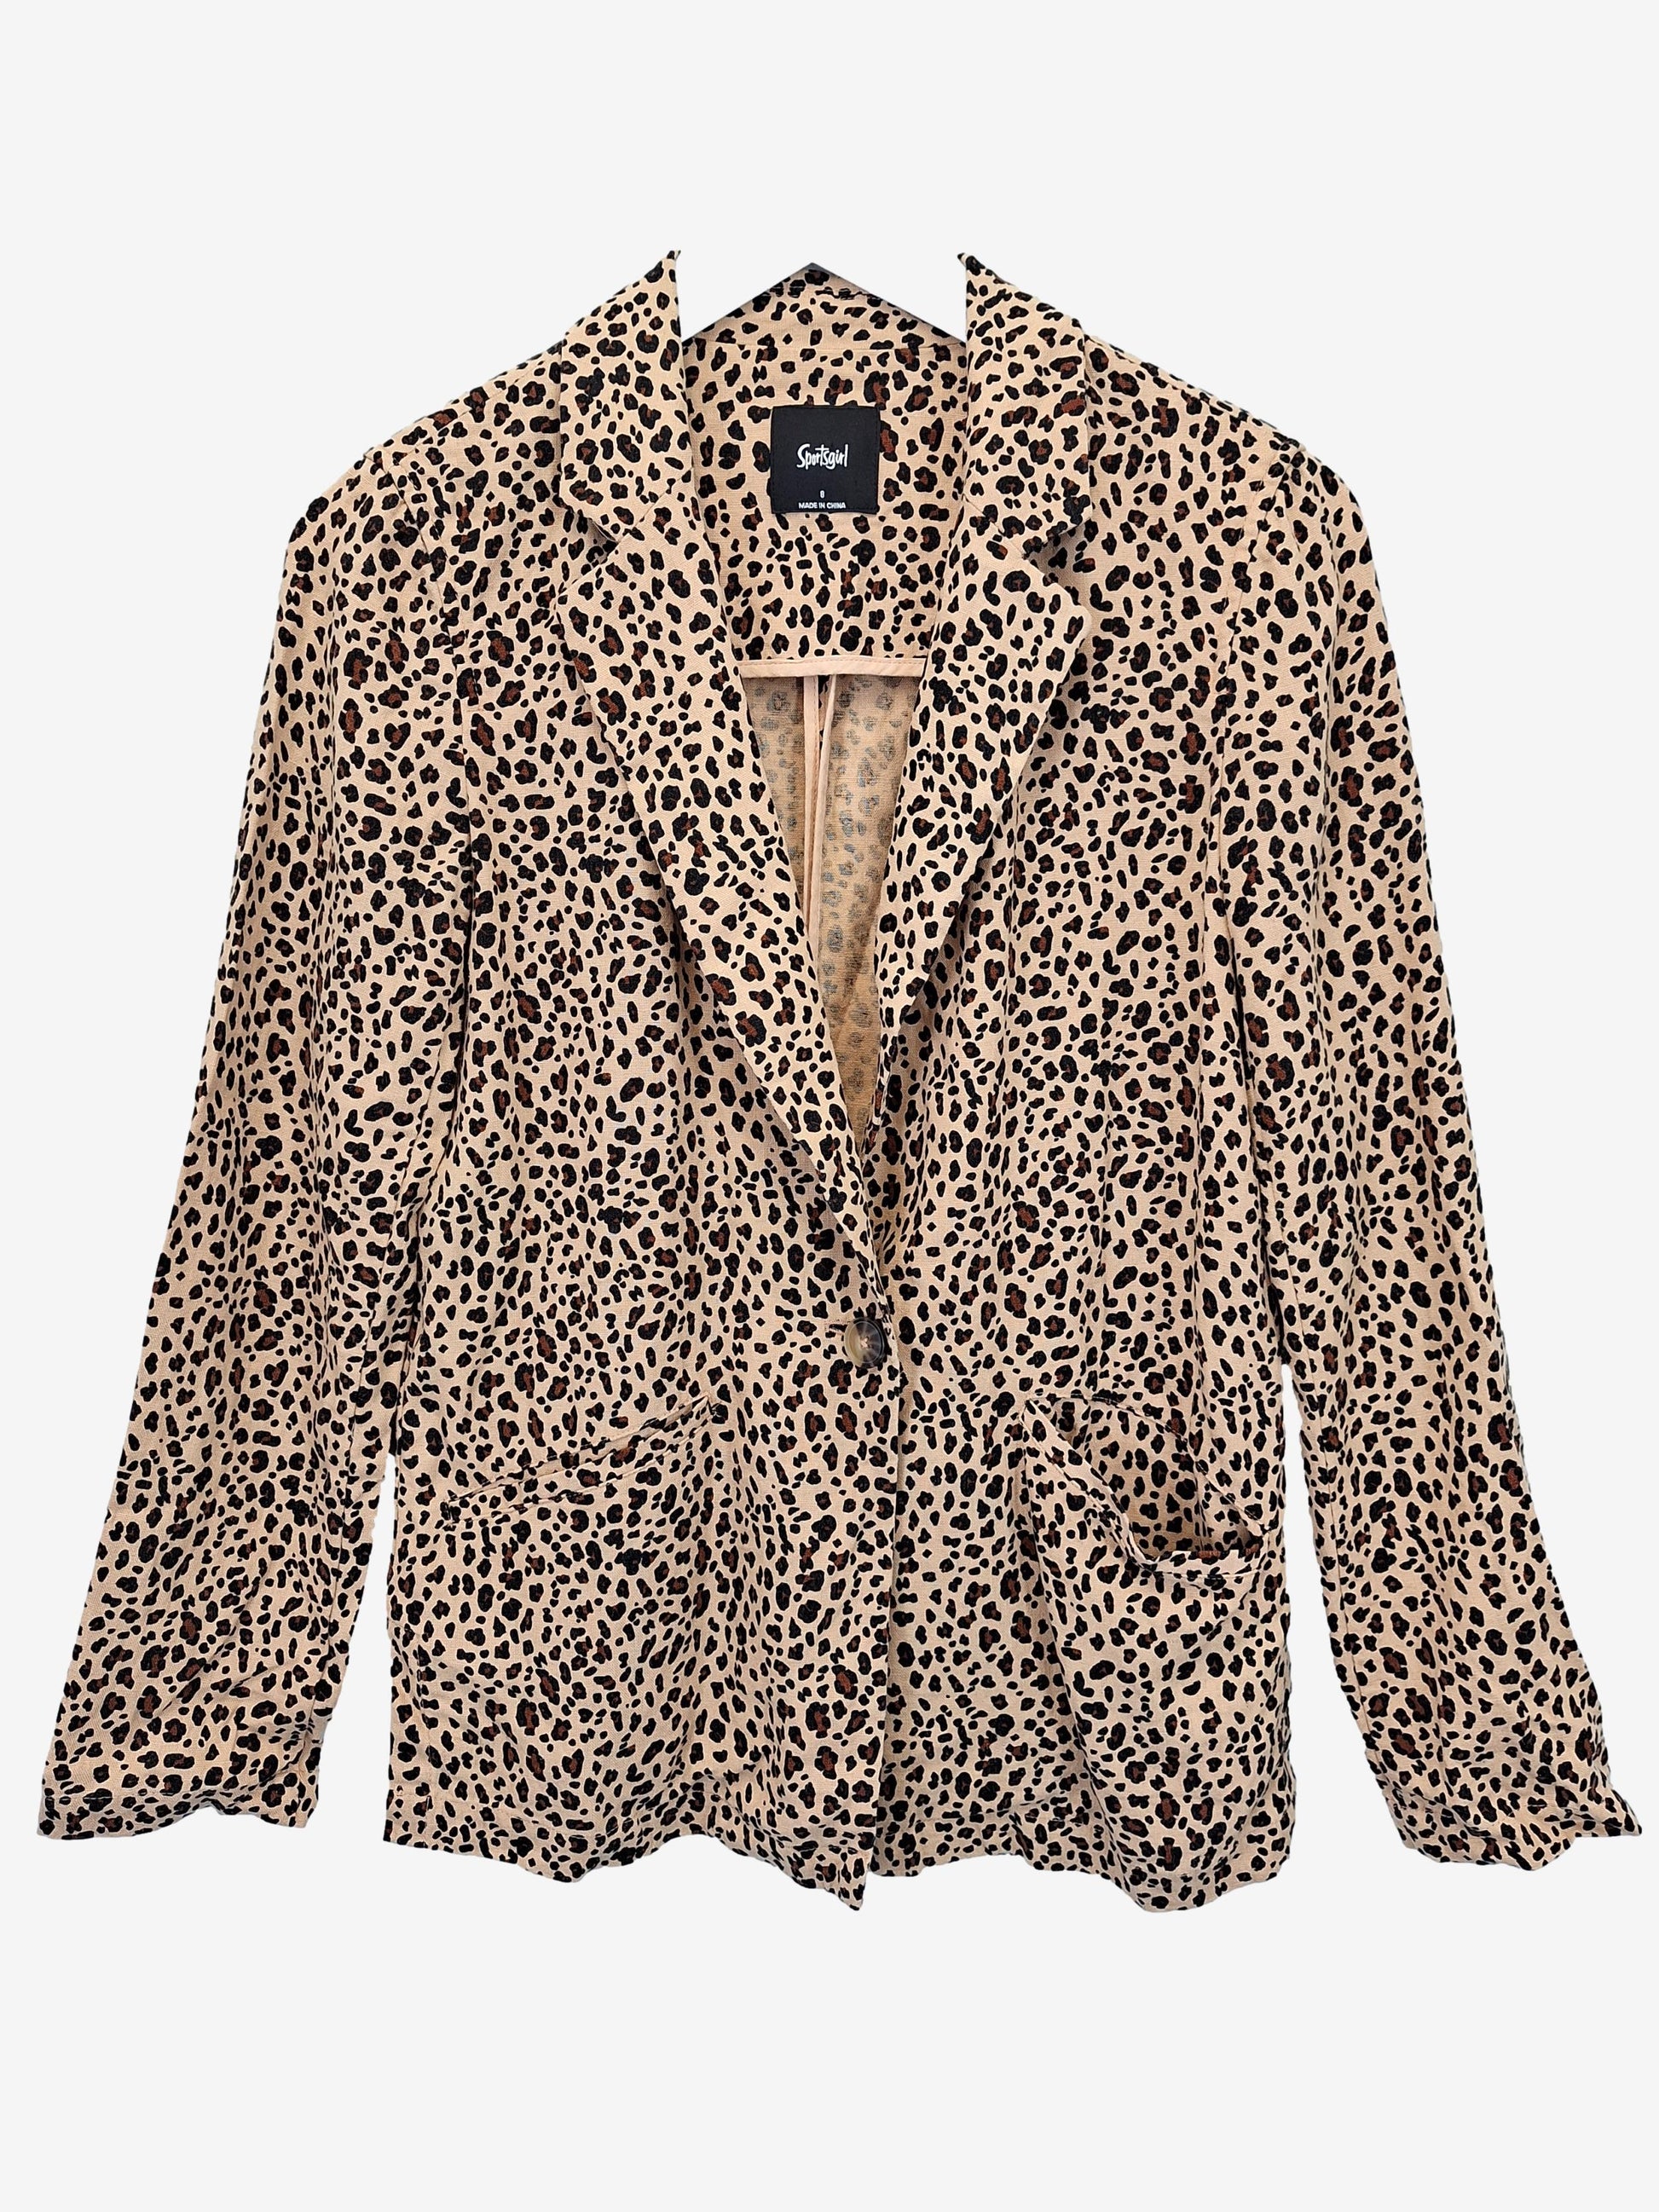 Sportsgirl Cheetah Blazer Size 8 by SwapUp-Online Second Hand Store-Online Thrift Store